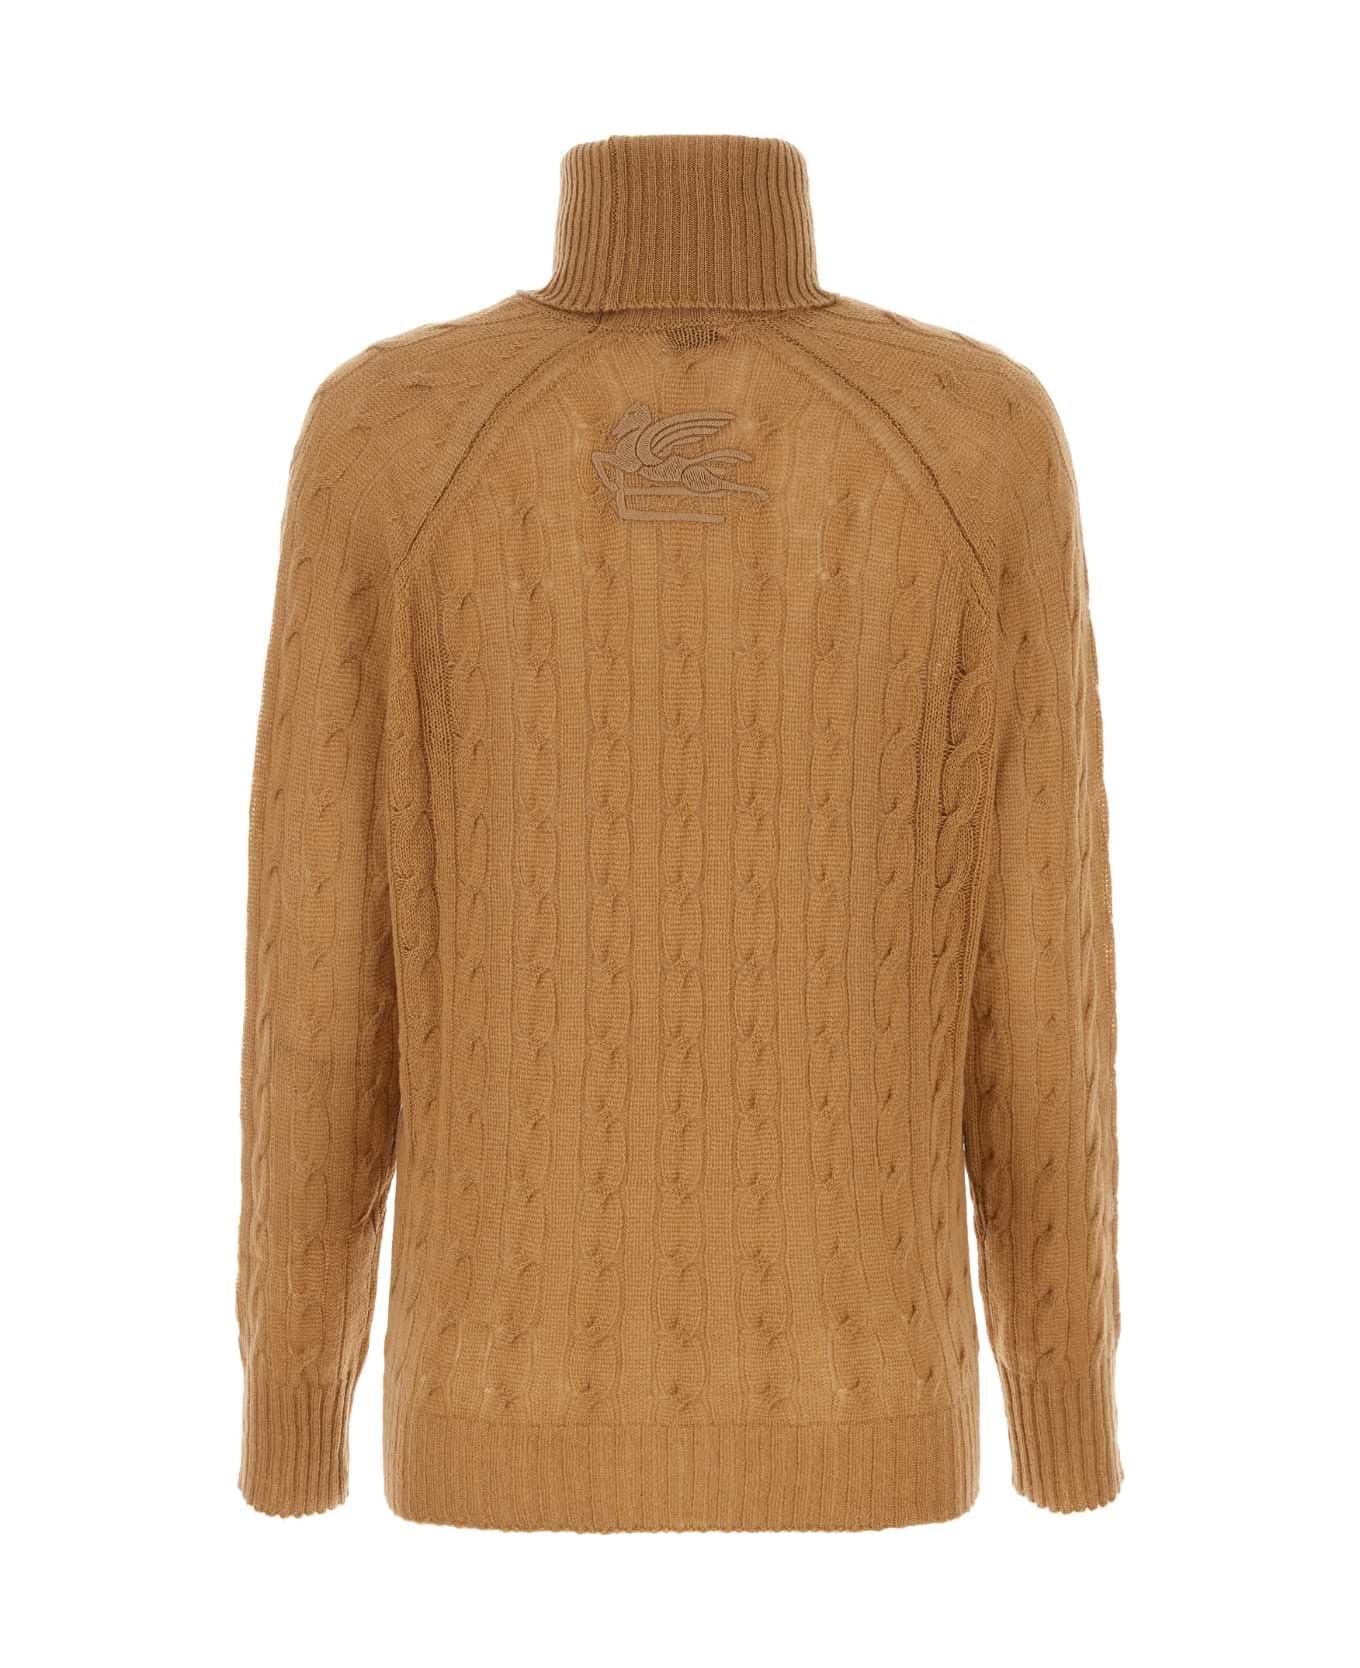 Etro Biscuit Cashmere Sweater - BEIGE